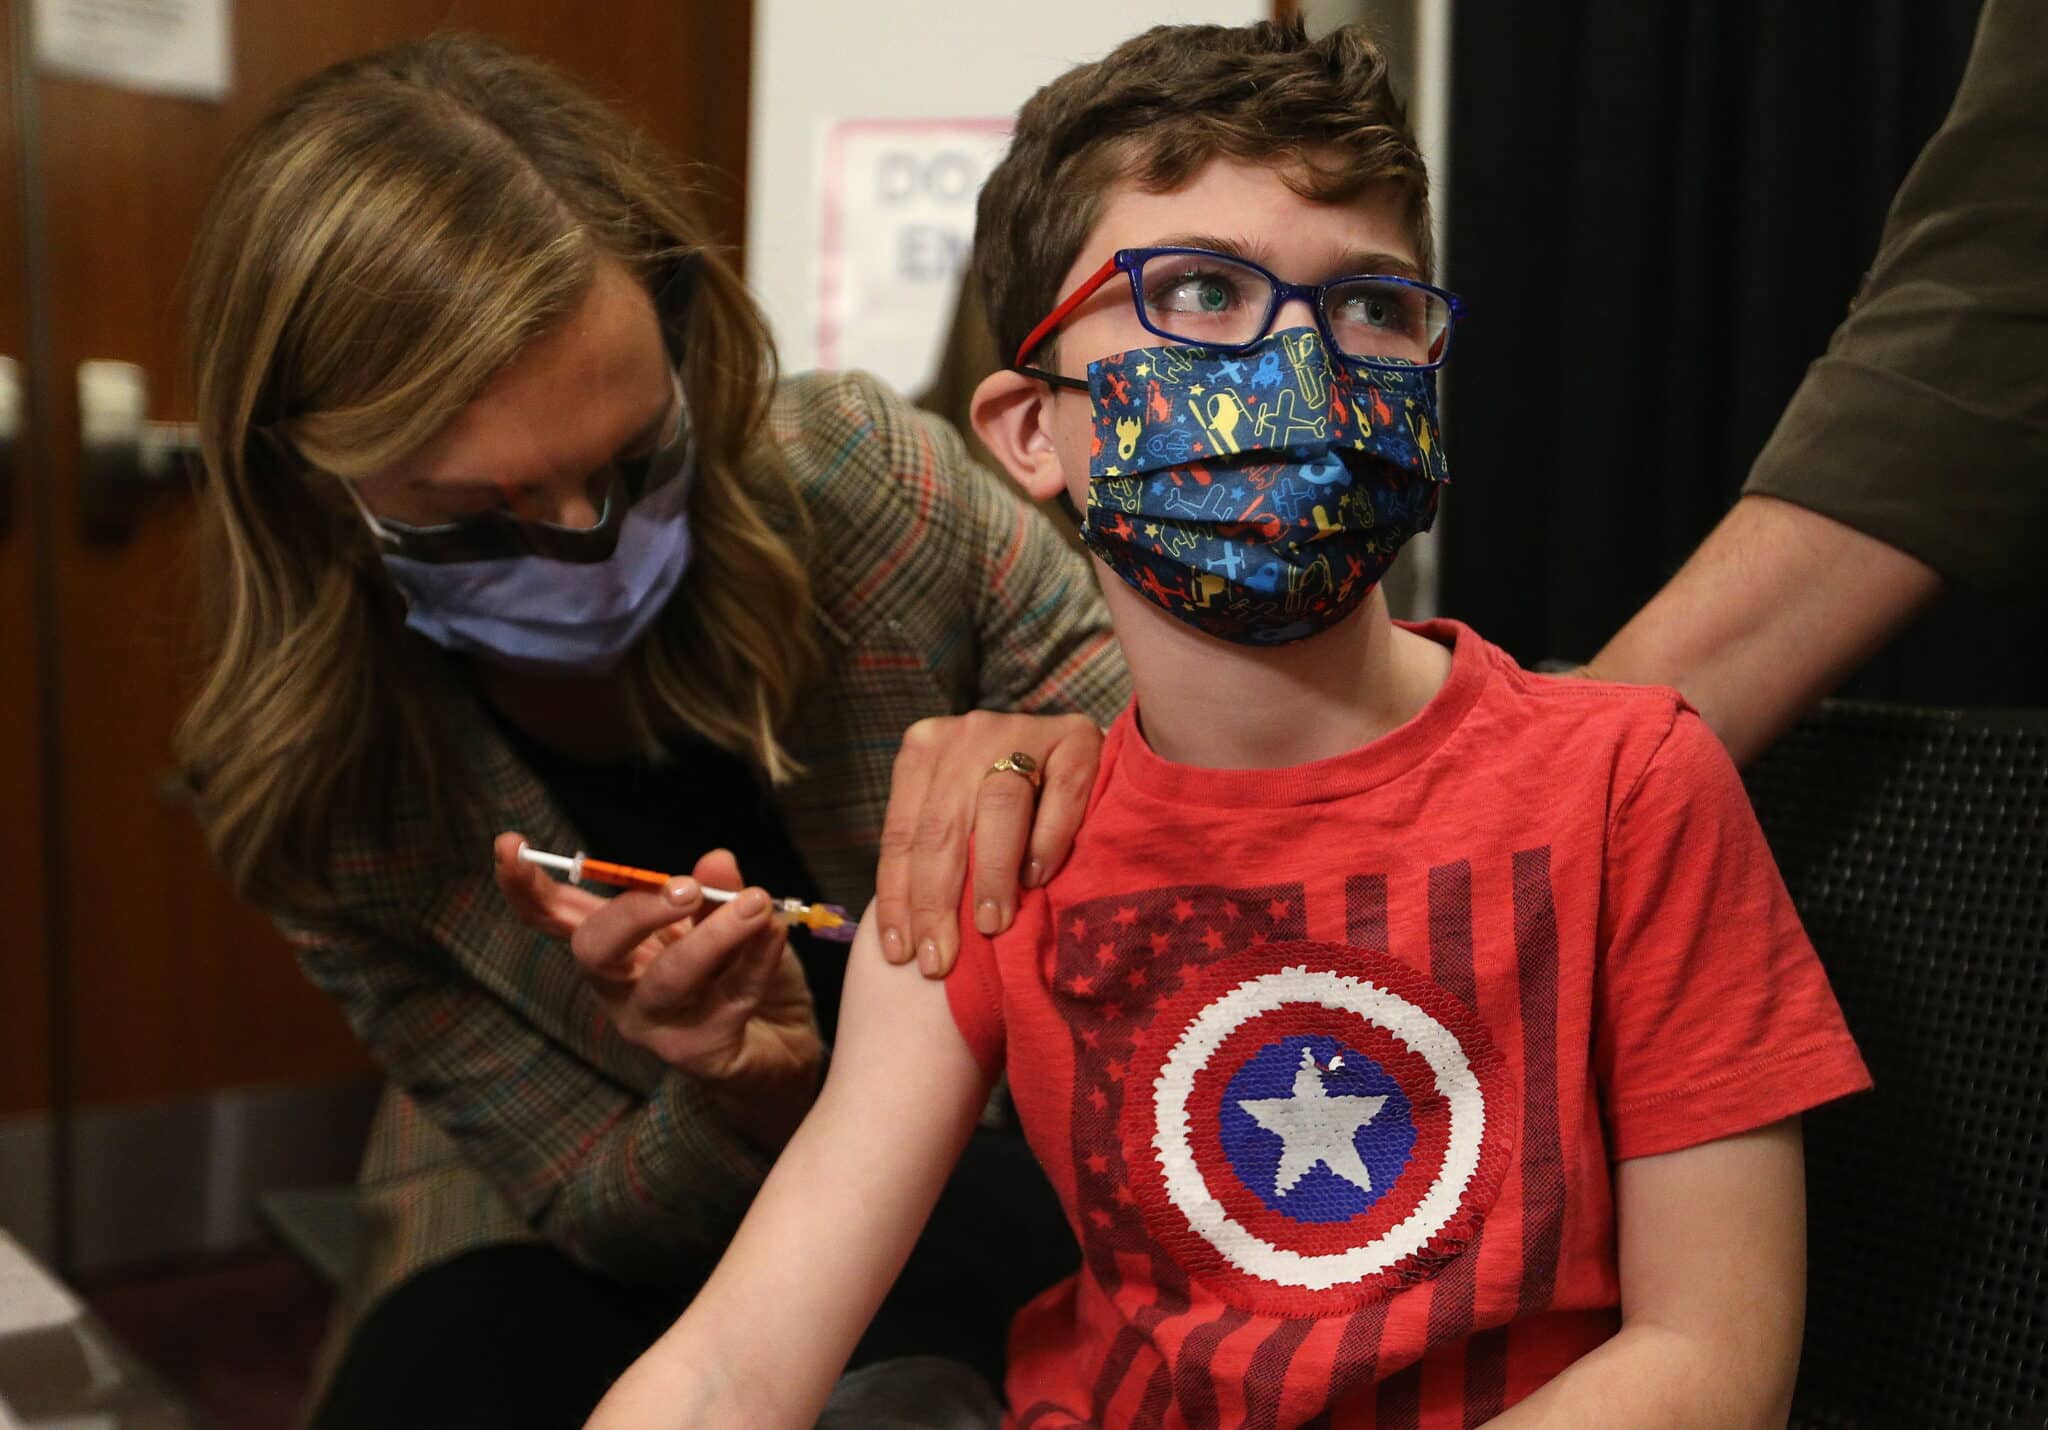 Un niño menor de 12 años recibiendo la vacuna contra el coronavirus en Canadá